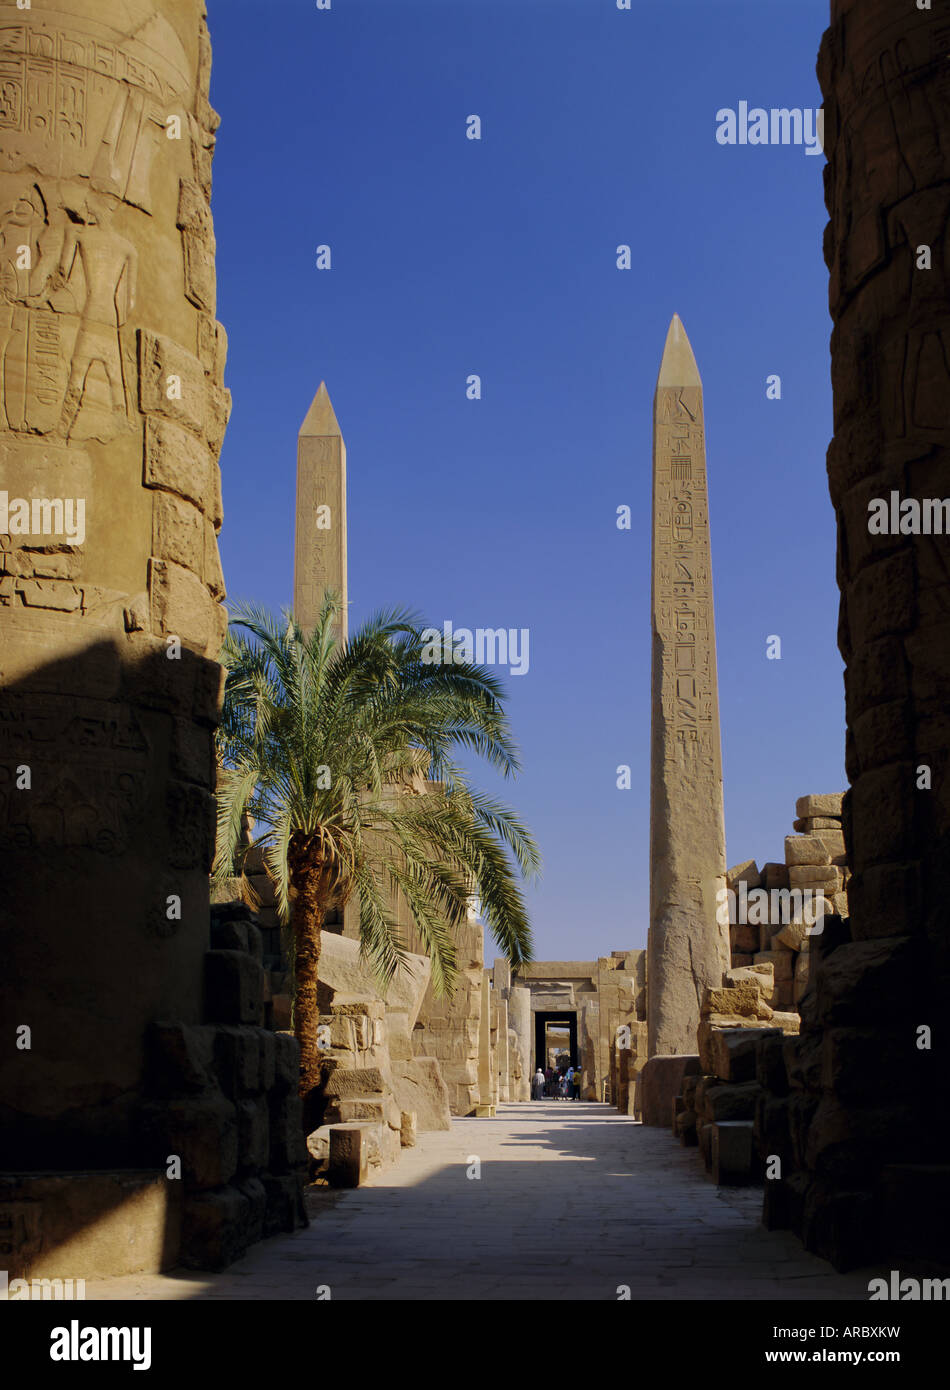 Les obélisques d'Hatchepsout, Temple de Karnak, UNESCO World Heritage Site, près de Louxor, Thèbes, Egypte, Afrique du Nord, Afrique Banque D'Images